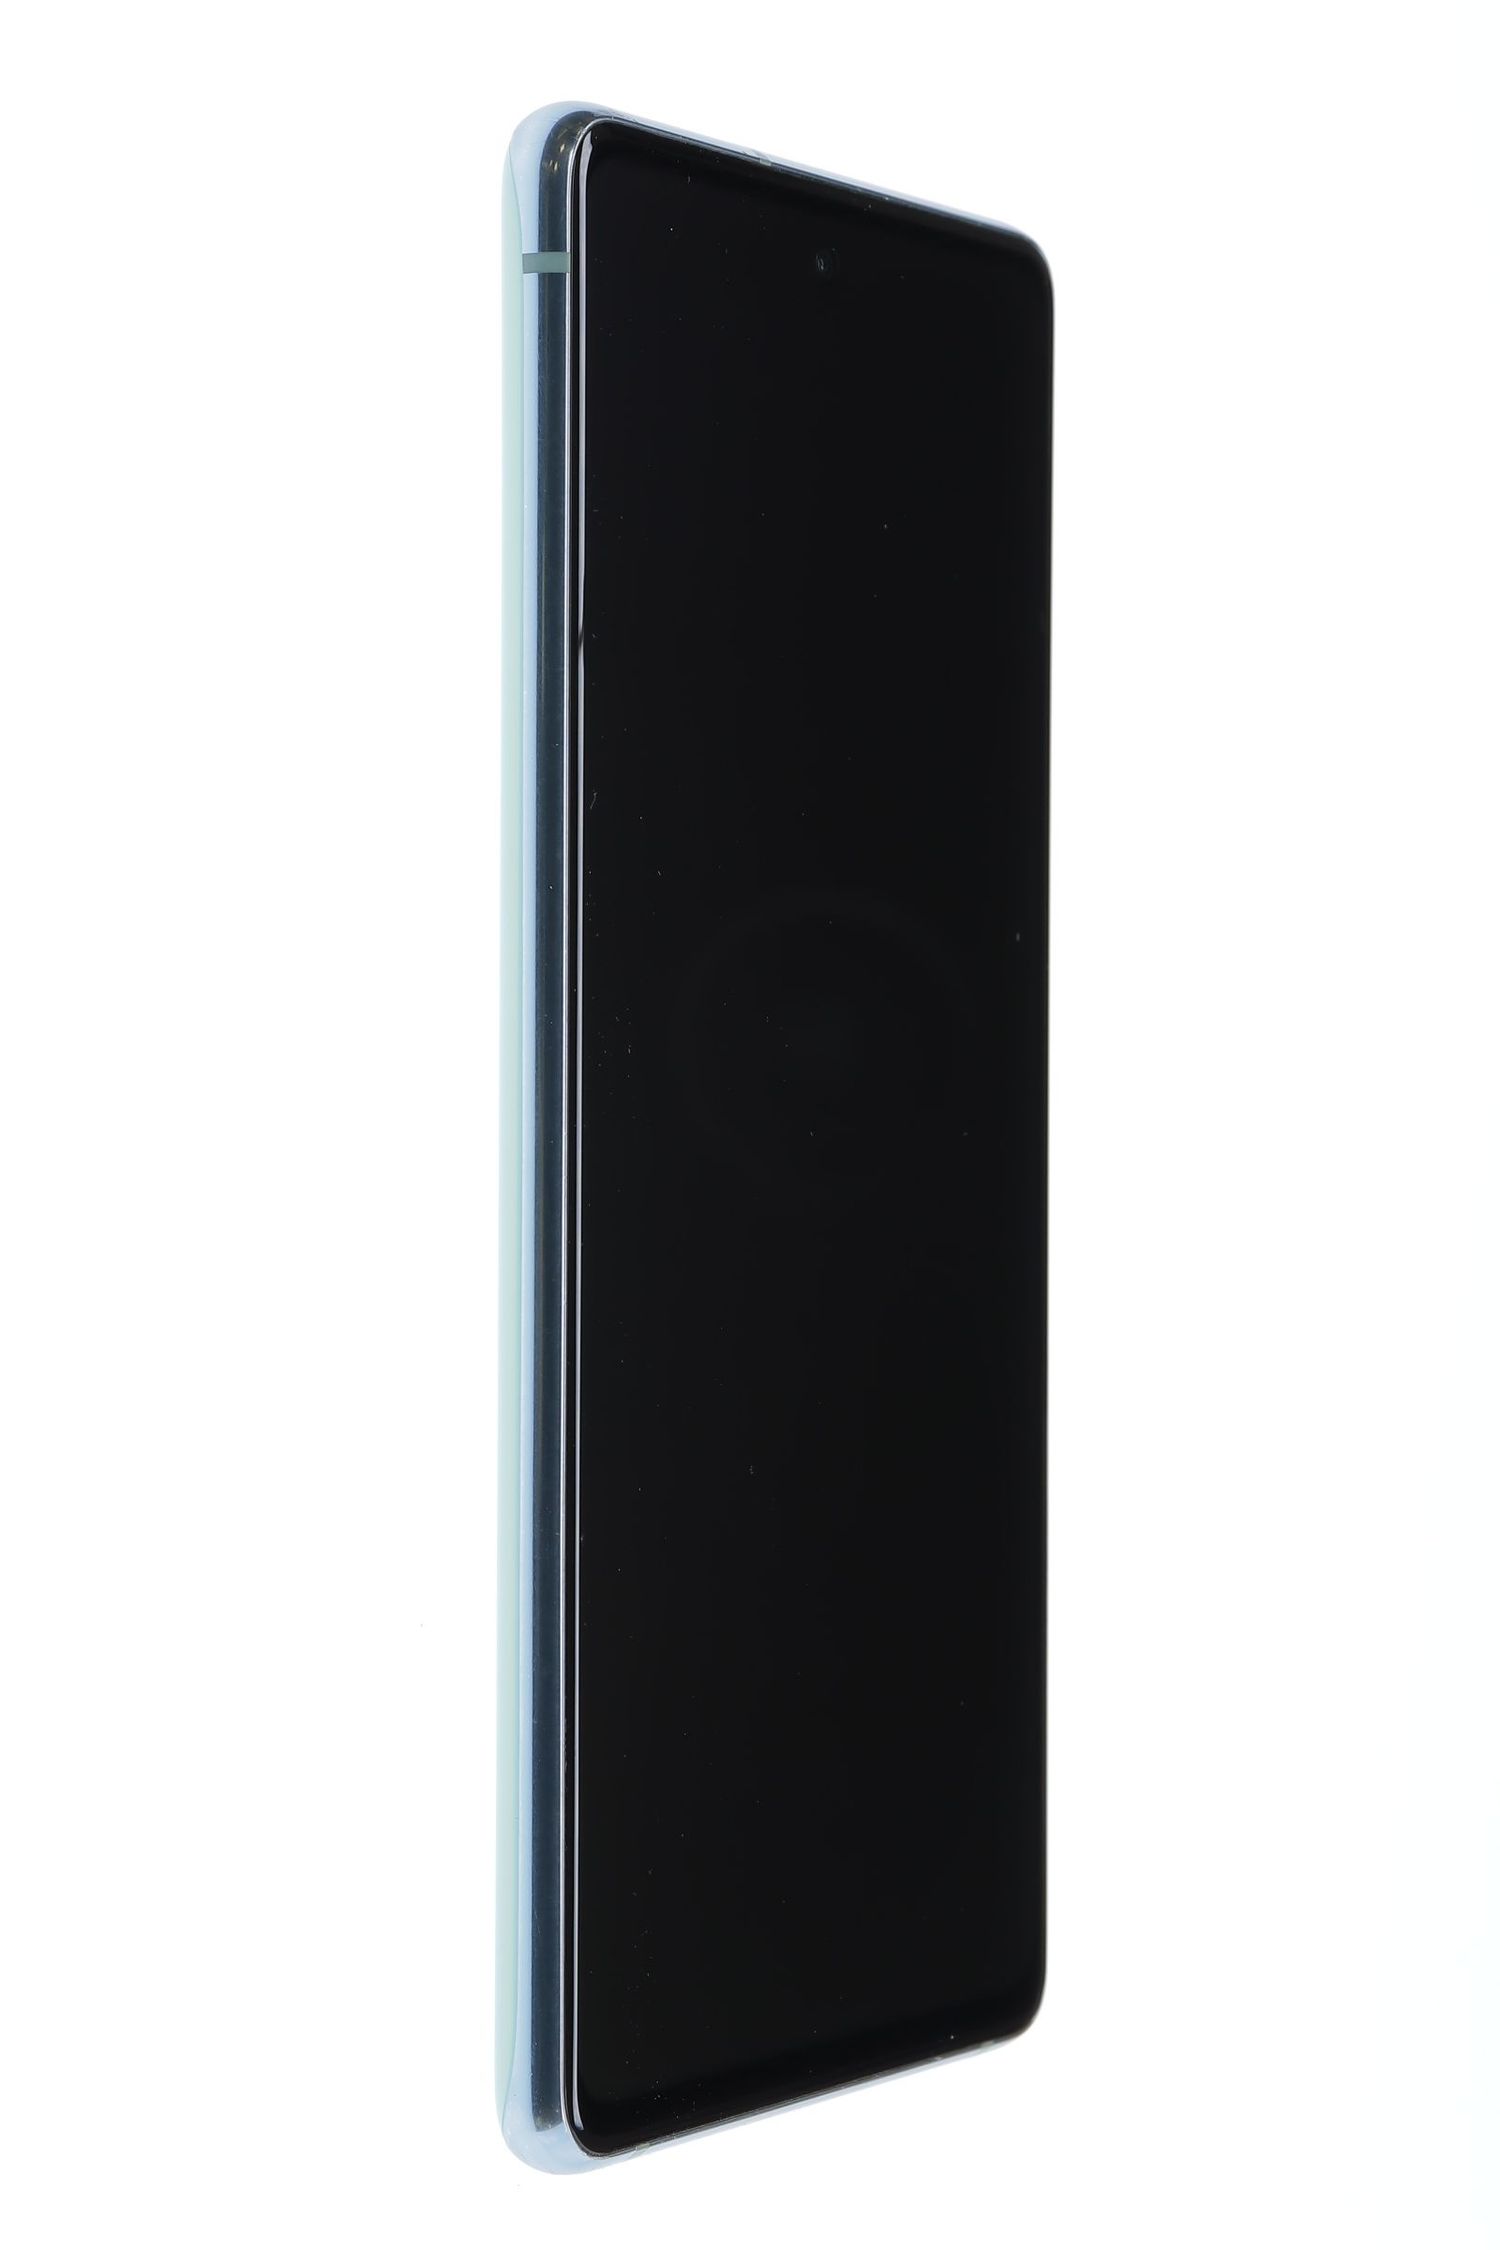 Κινητό τηλέφωνο Samsung Galaxy S20 FE Dual Sim, Cloud Mint, 128 GB, Foarte Bun